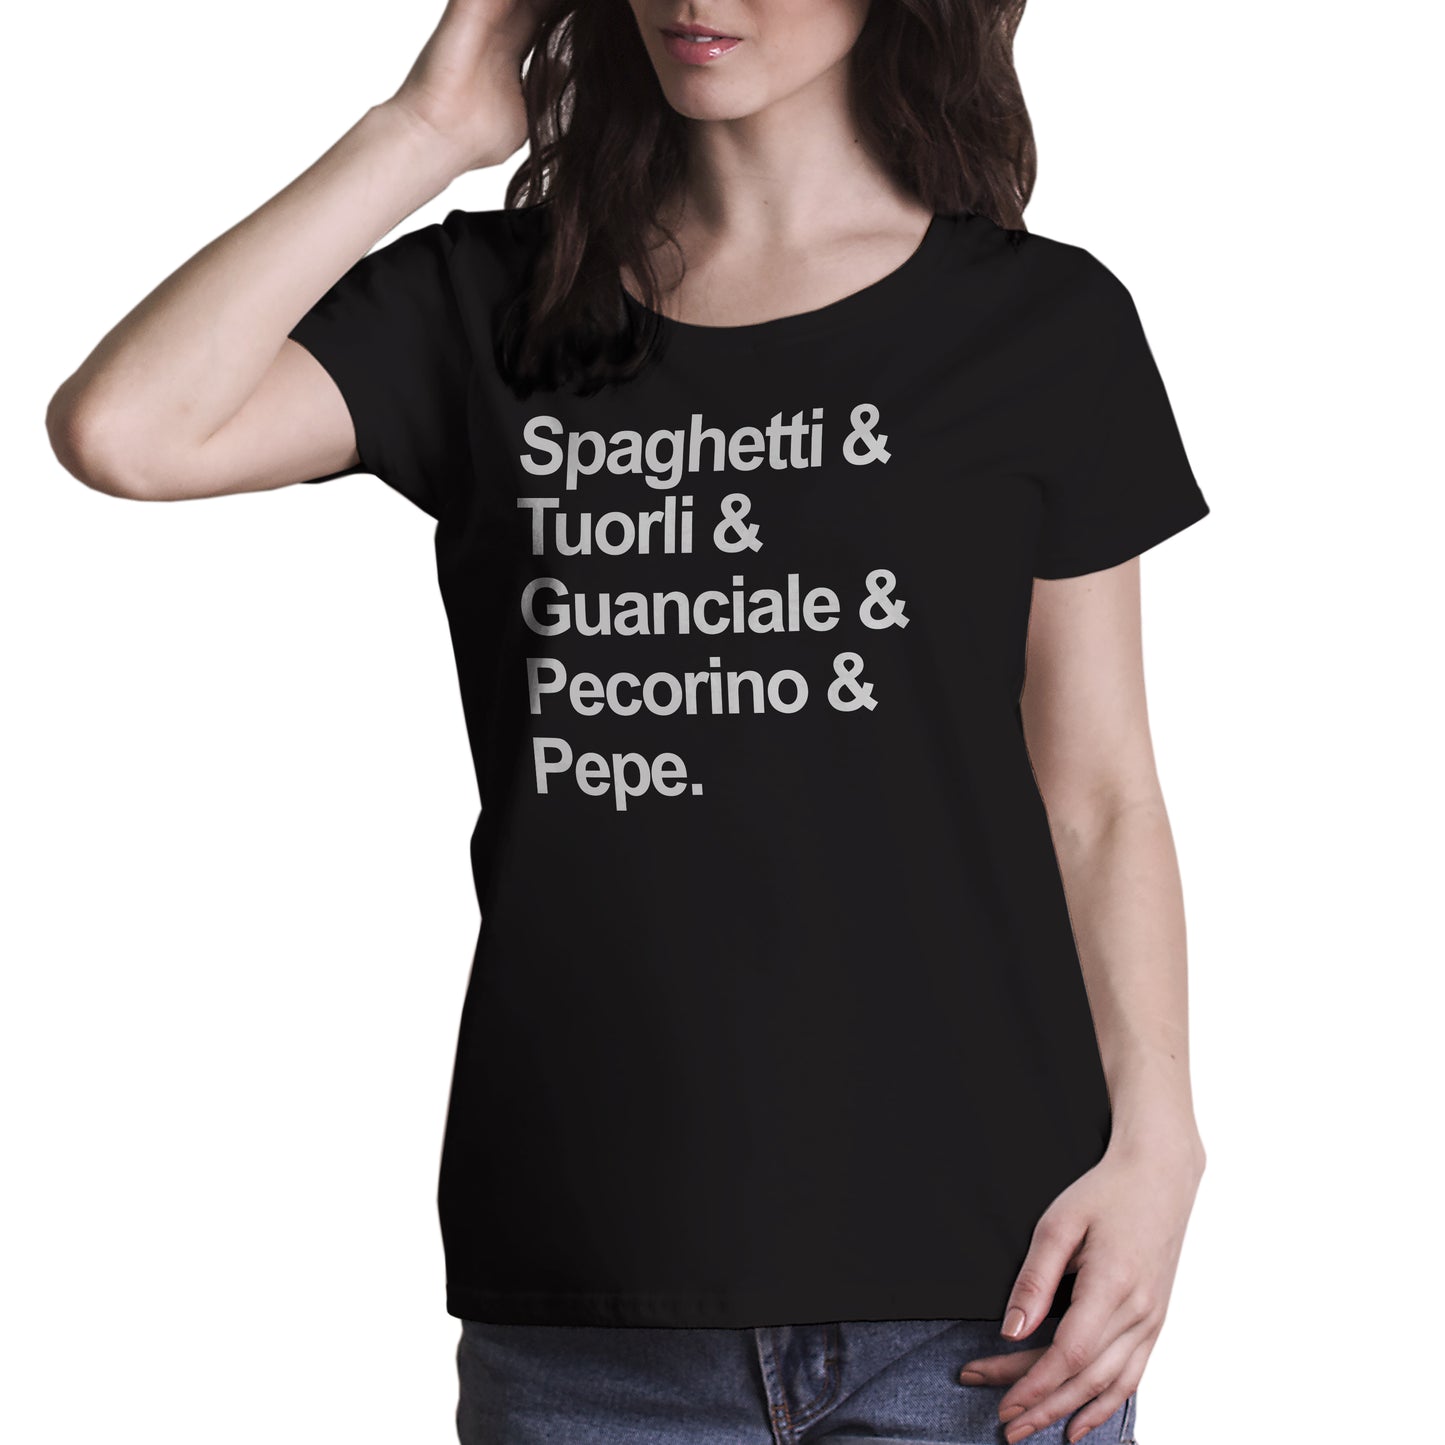 T-Shirt Carbonara - Ricetta della pasta italiana per eccellenza - MUSIC Choose ur color - CUC chooseurcolor